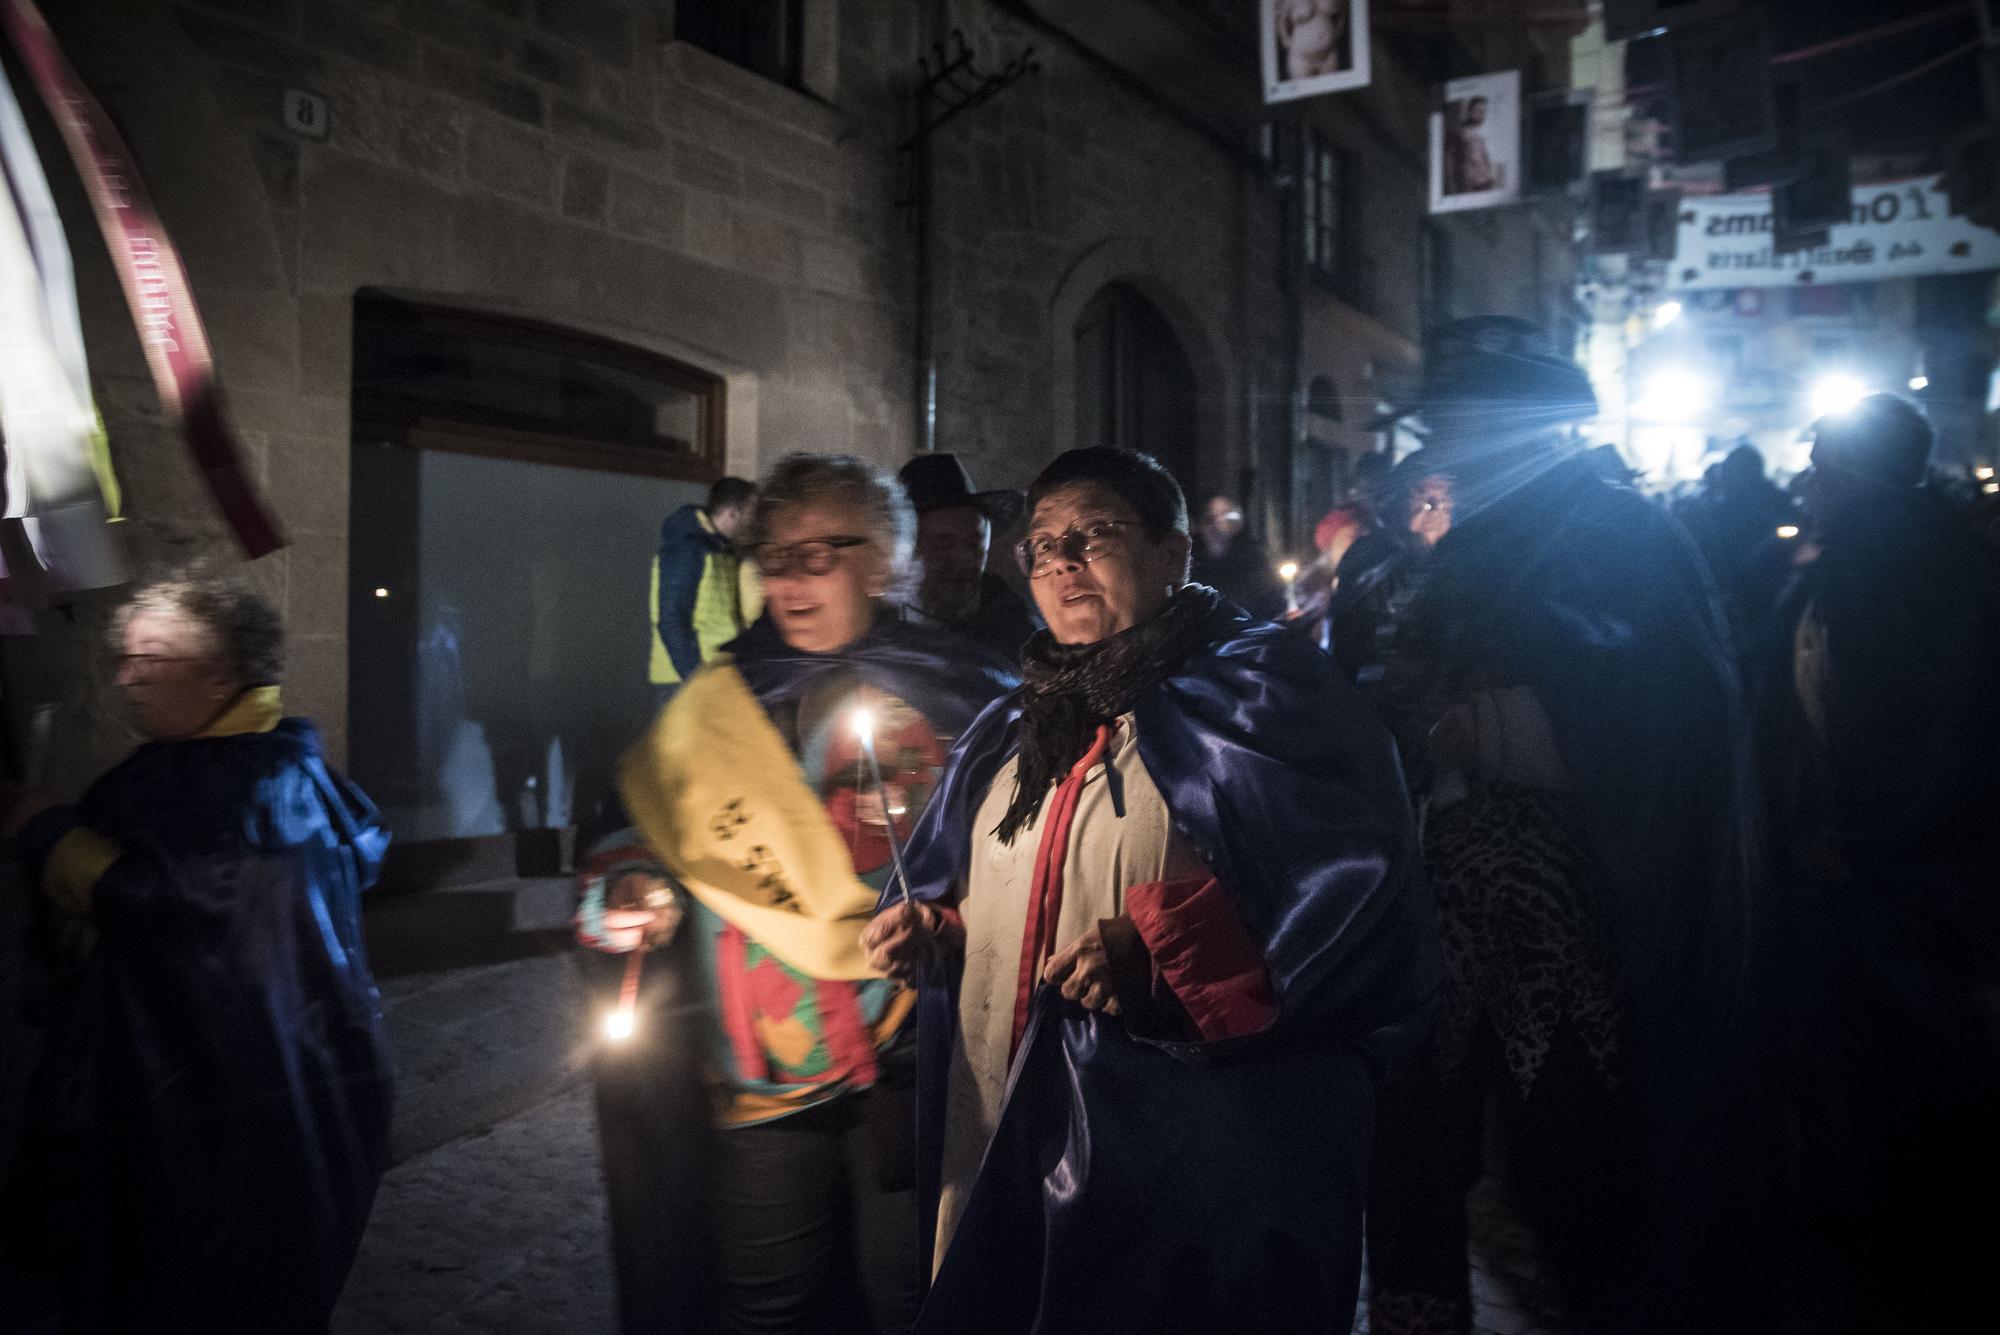 La processó tanca un Carnaval de Solsona multitudinari, en imatges